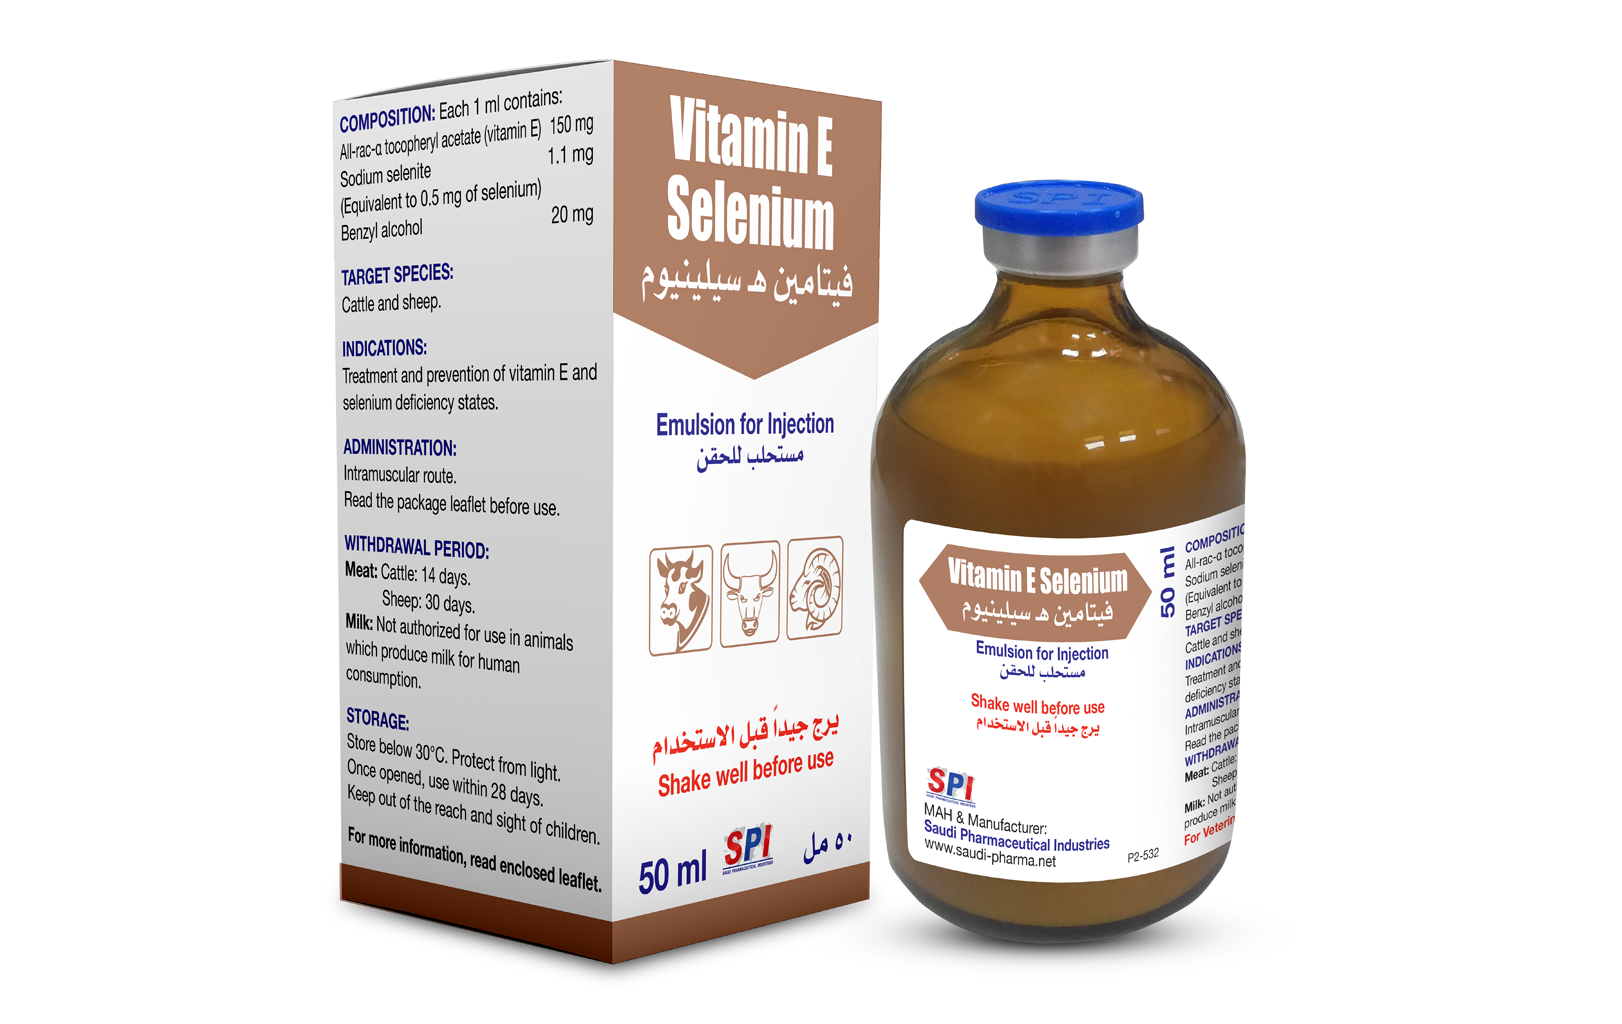 Vitamin E Selenium Emulsion for Injection (50 ml)